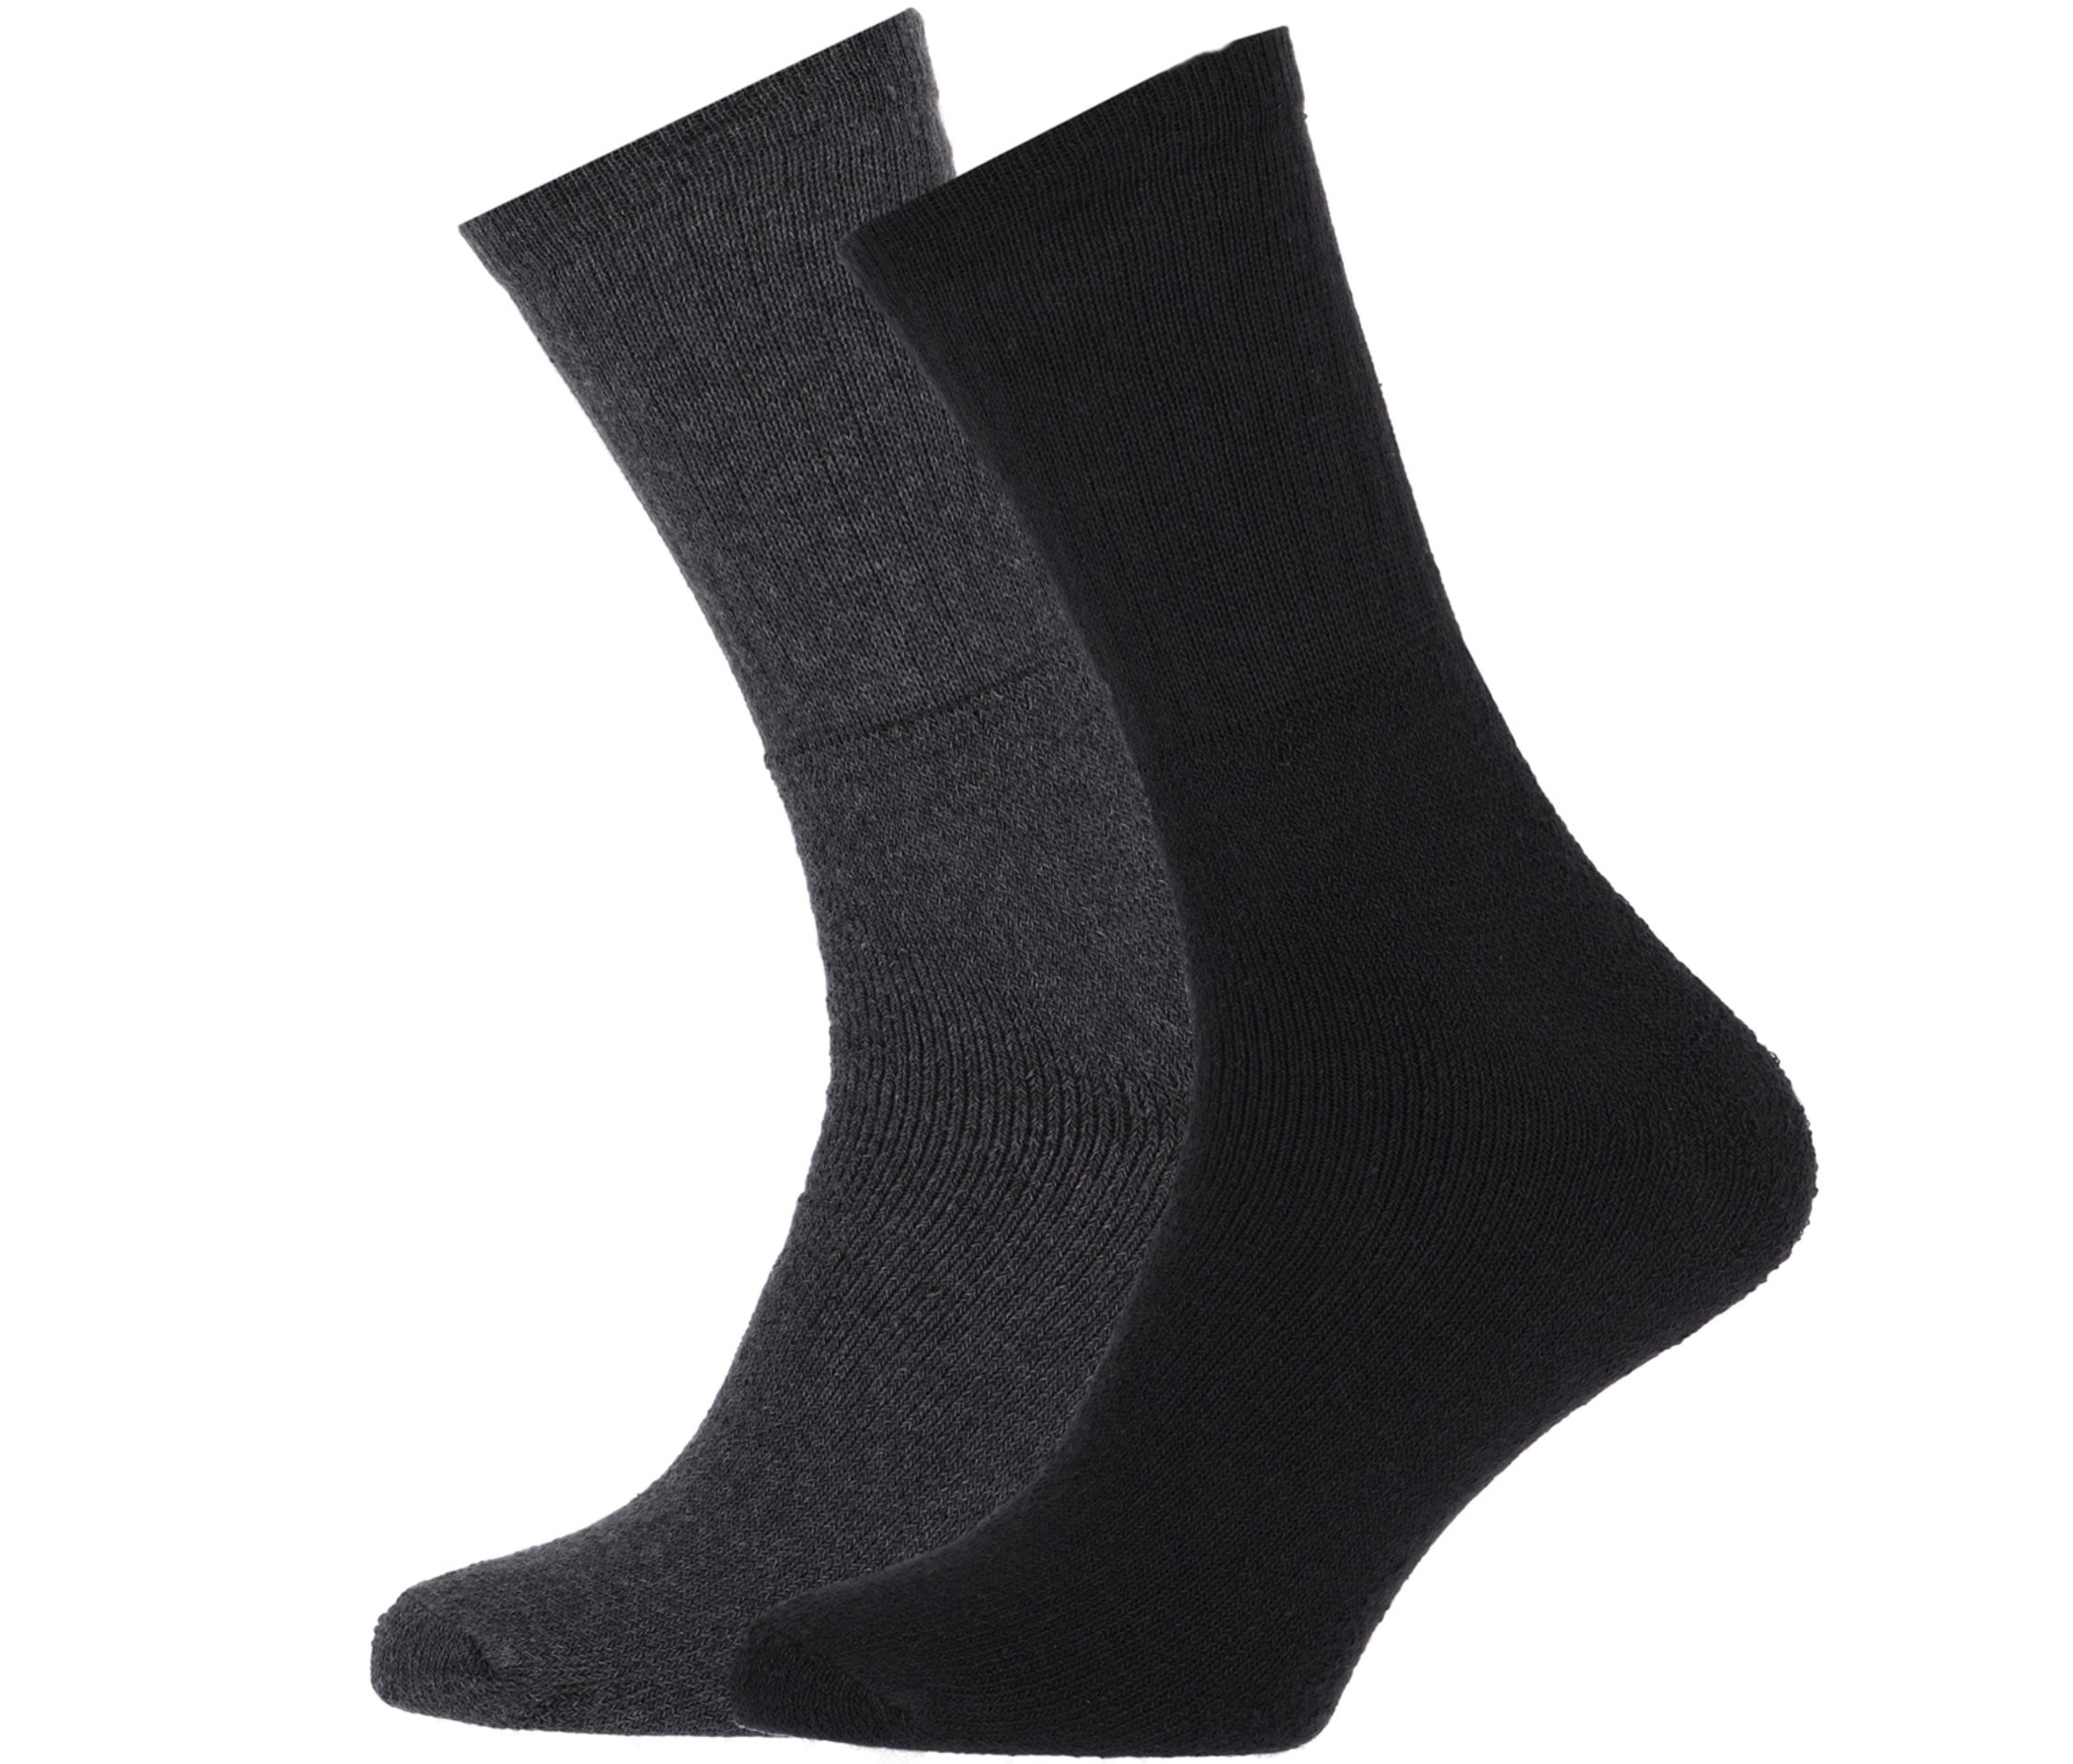 30er Pack STAPP Mega Thermo Socken für 33,33€